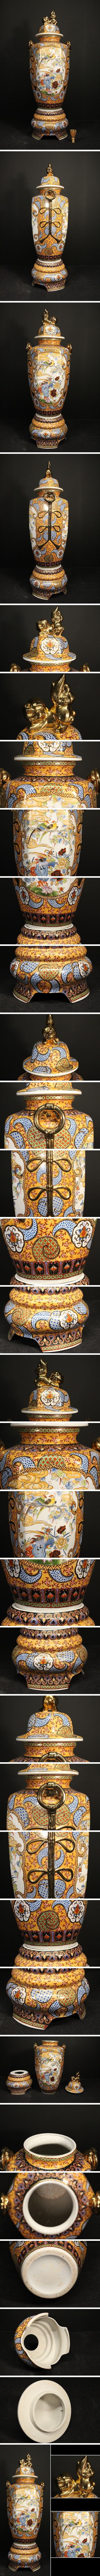 陶芸作品森 恵子 色絵 椿文 30cm 大鉢 1,990～2,000年の個展で購入